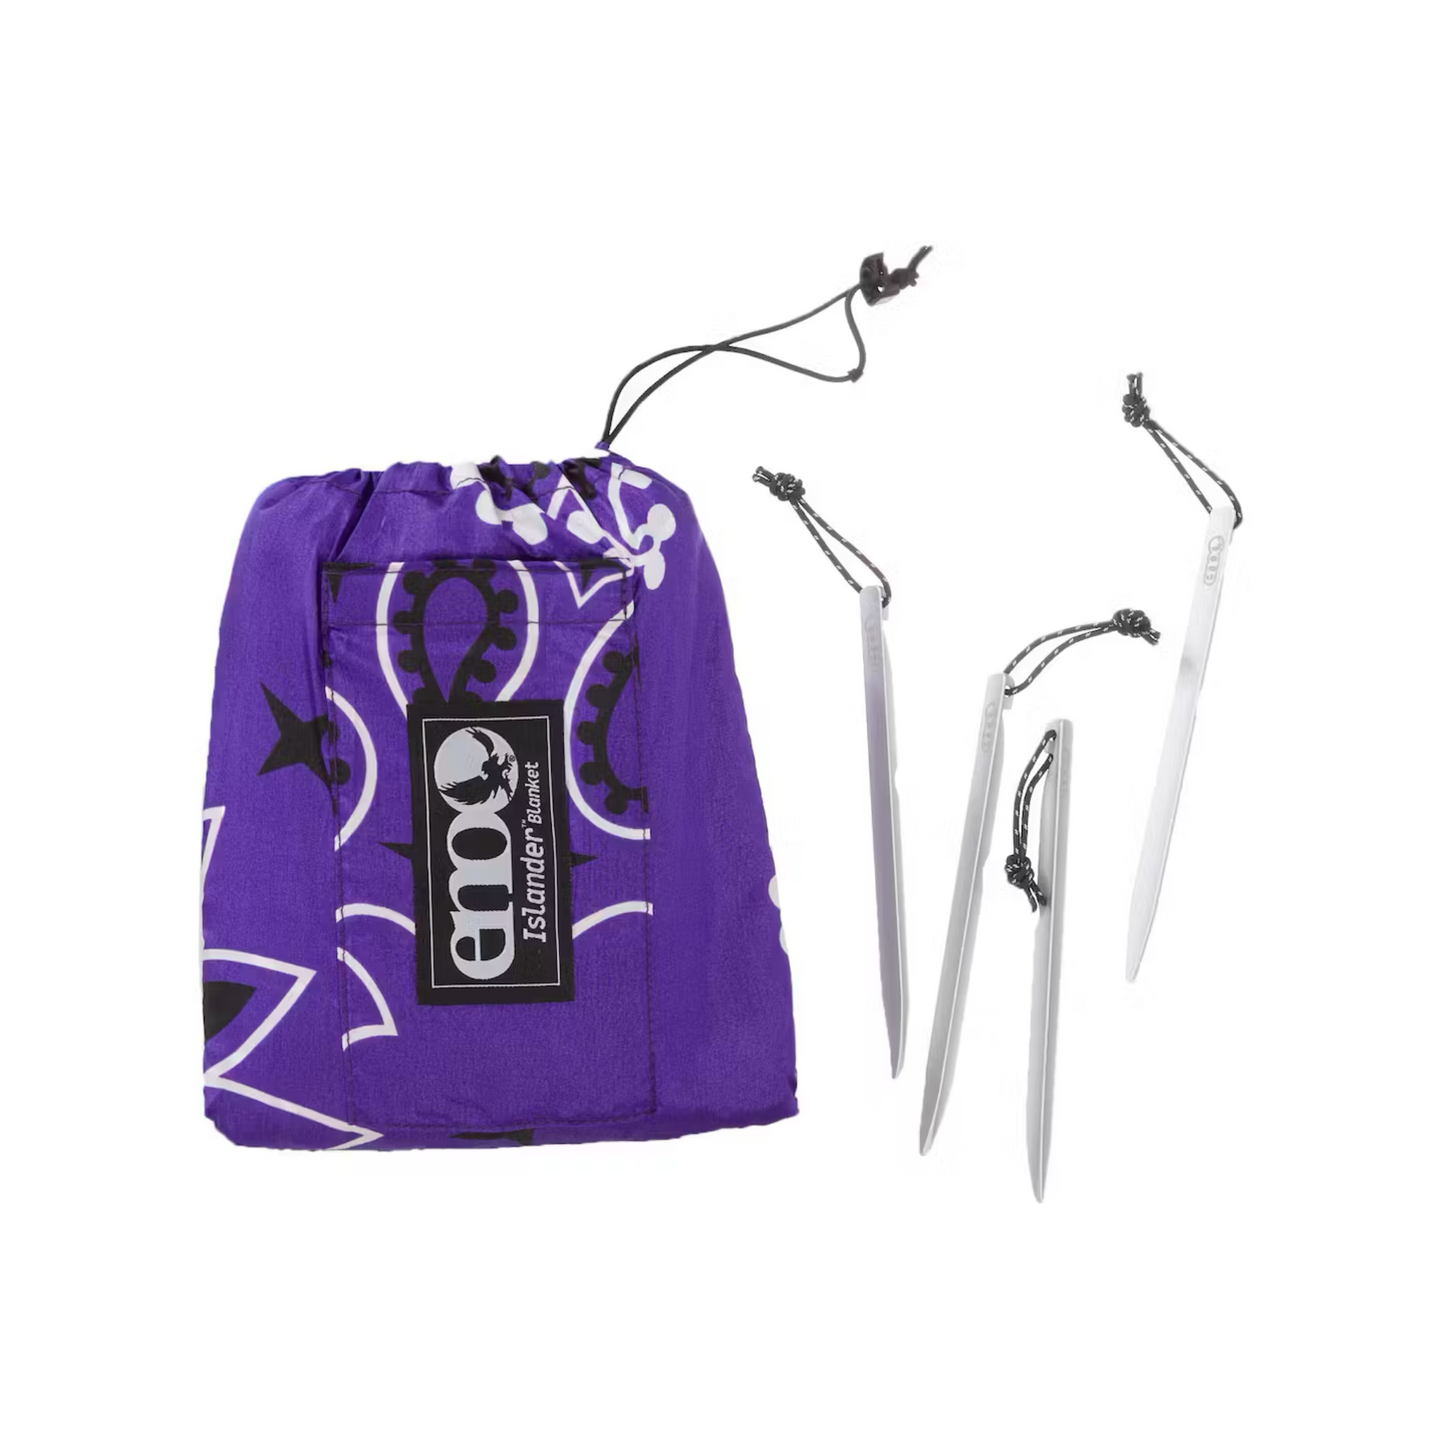 Supreme ENO Islander Nylon Blanket “Purple”